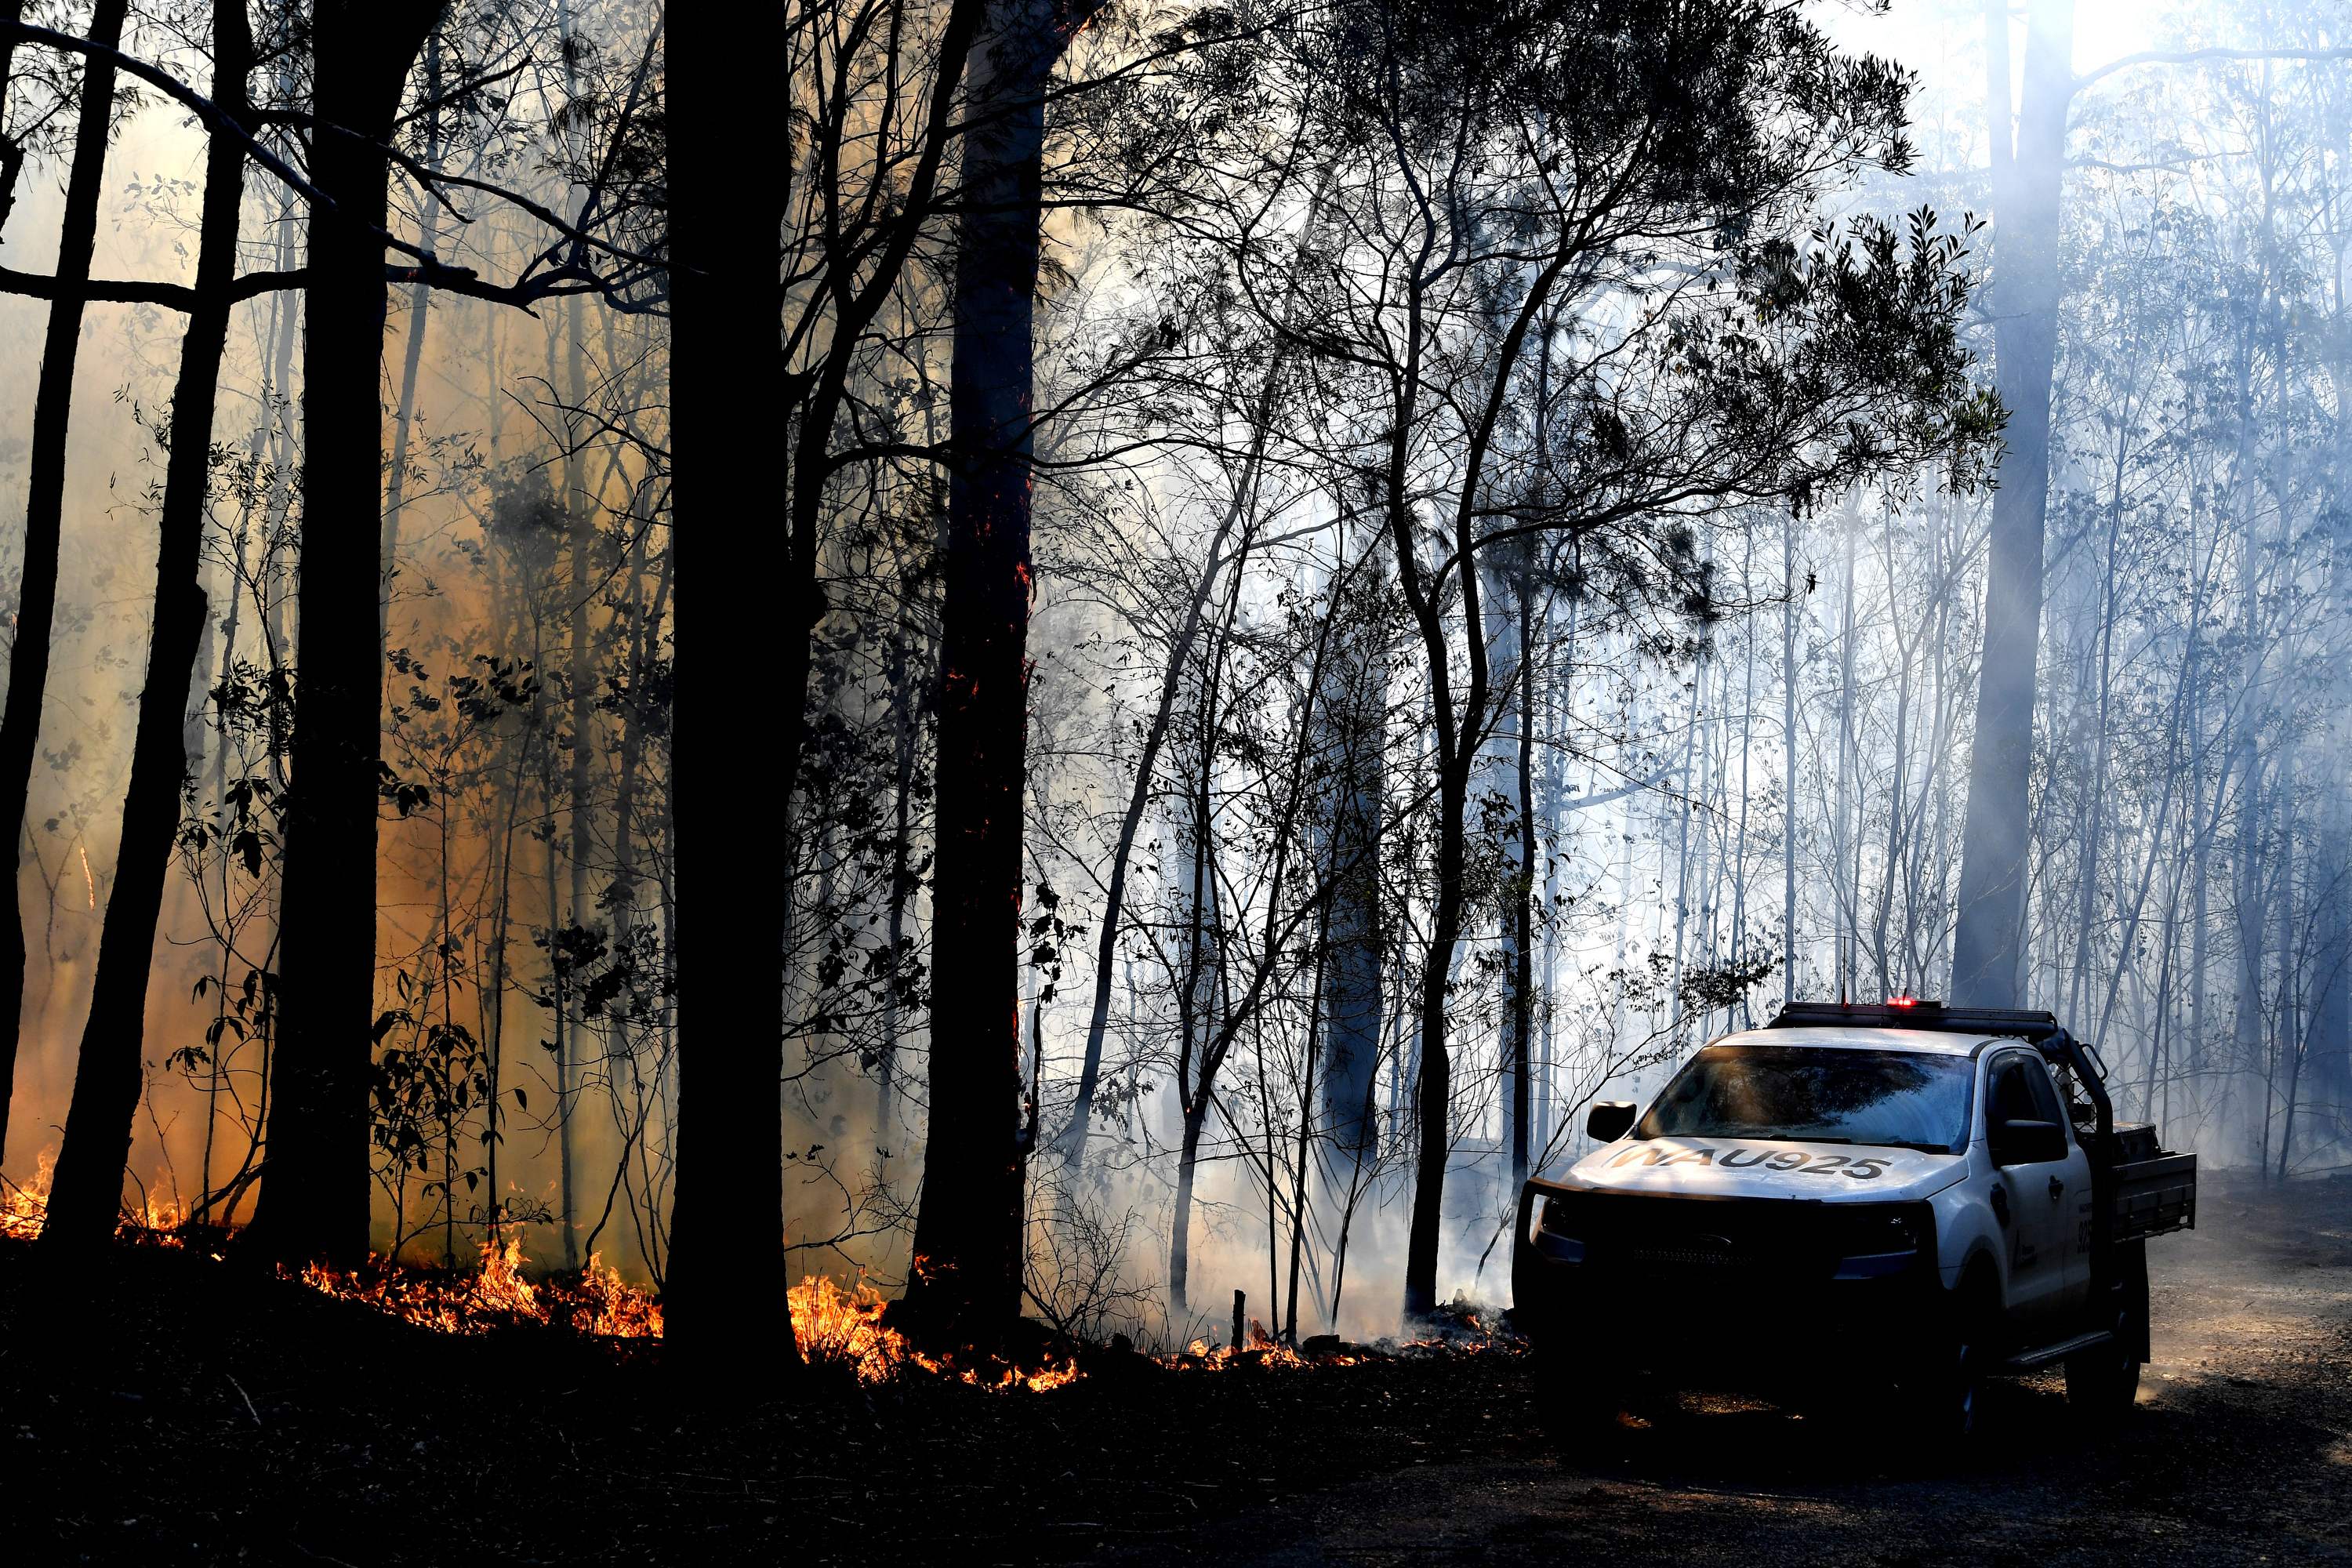 Un área  de dos mil hectáreas han sido devastada durante la temporada de incendios forestales, la cual comenzó antes de tiempo. (Foto Prensa Libre: AFP)